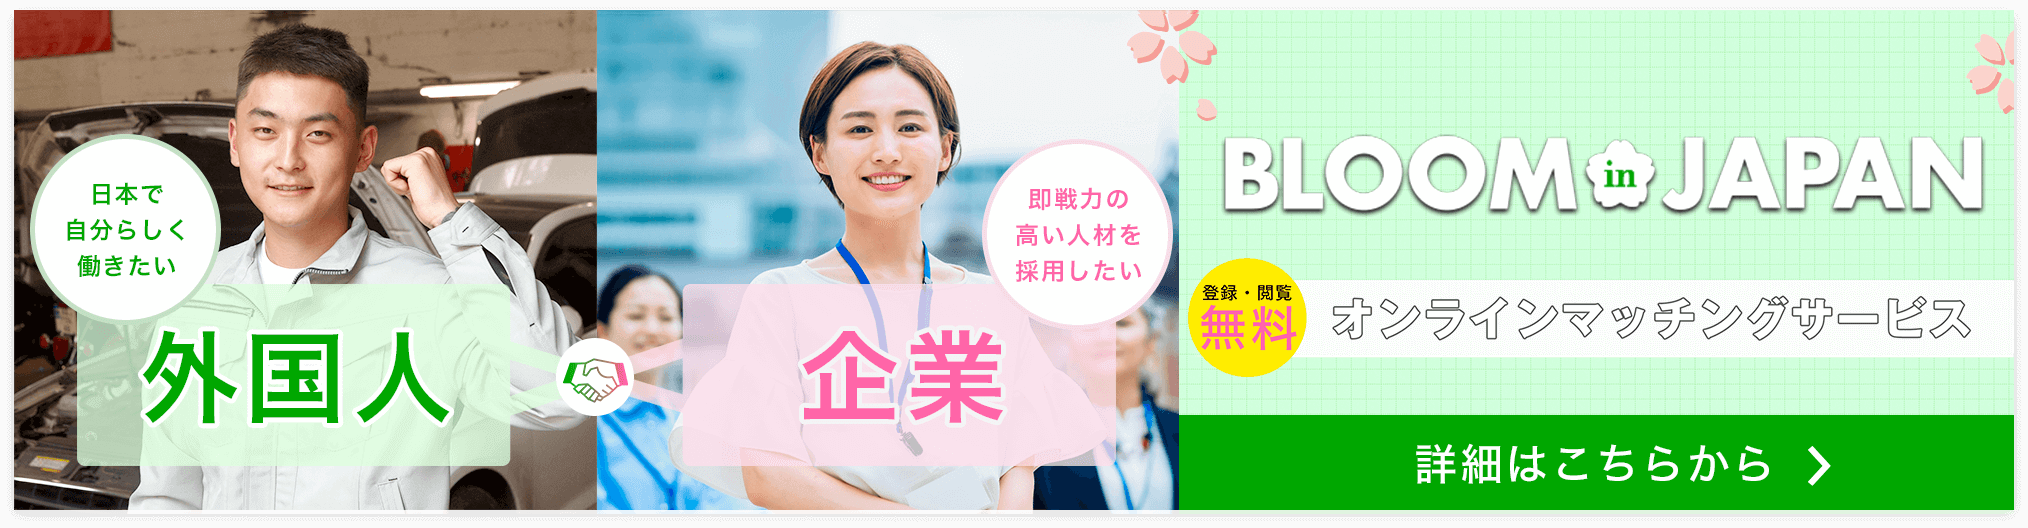 BLOOM in JAPAN 外国人財×日系企業のマッチングサイト